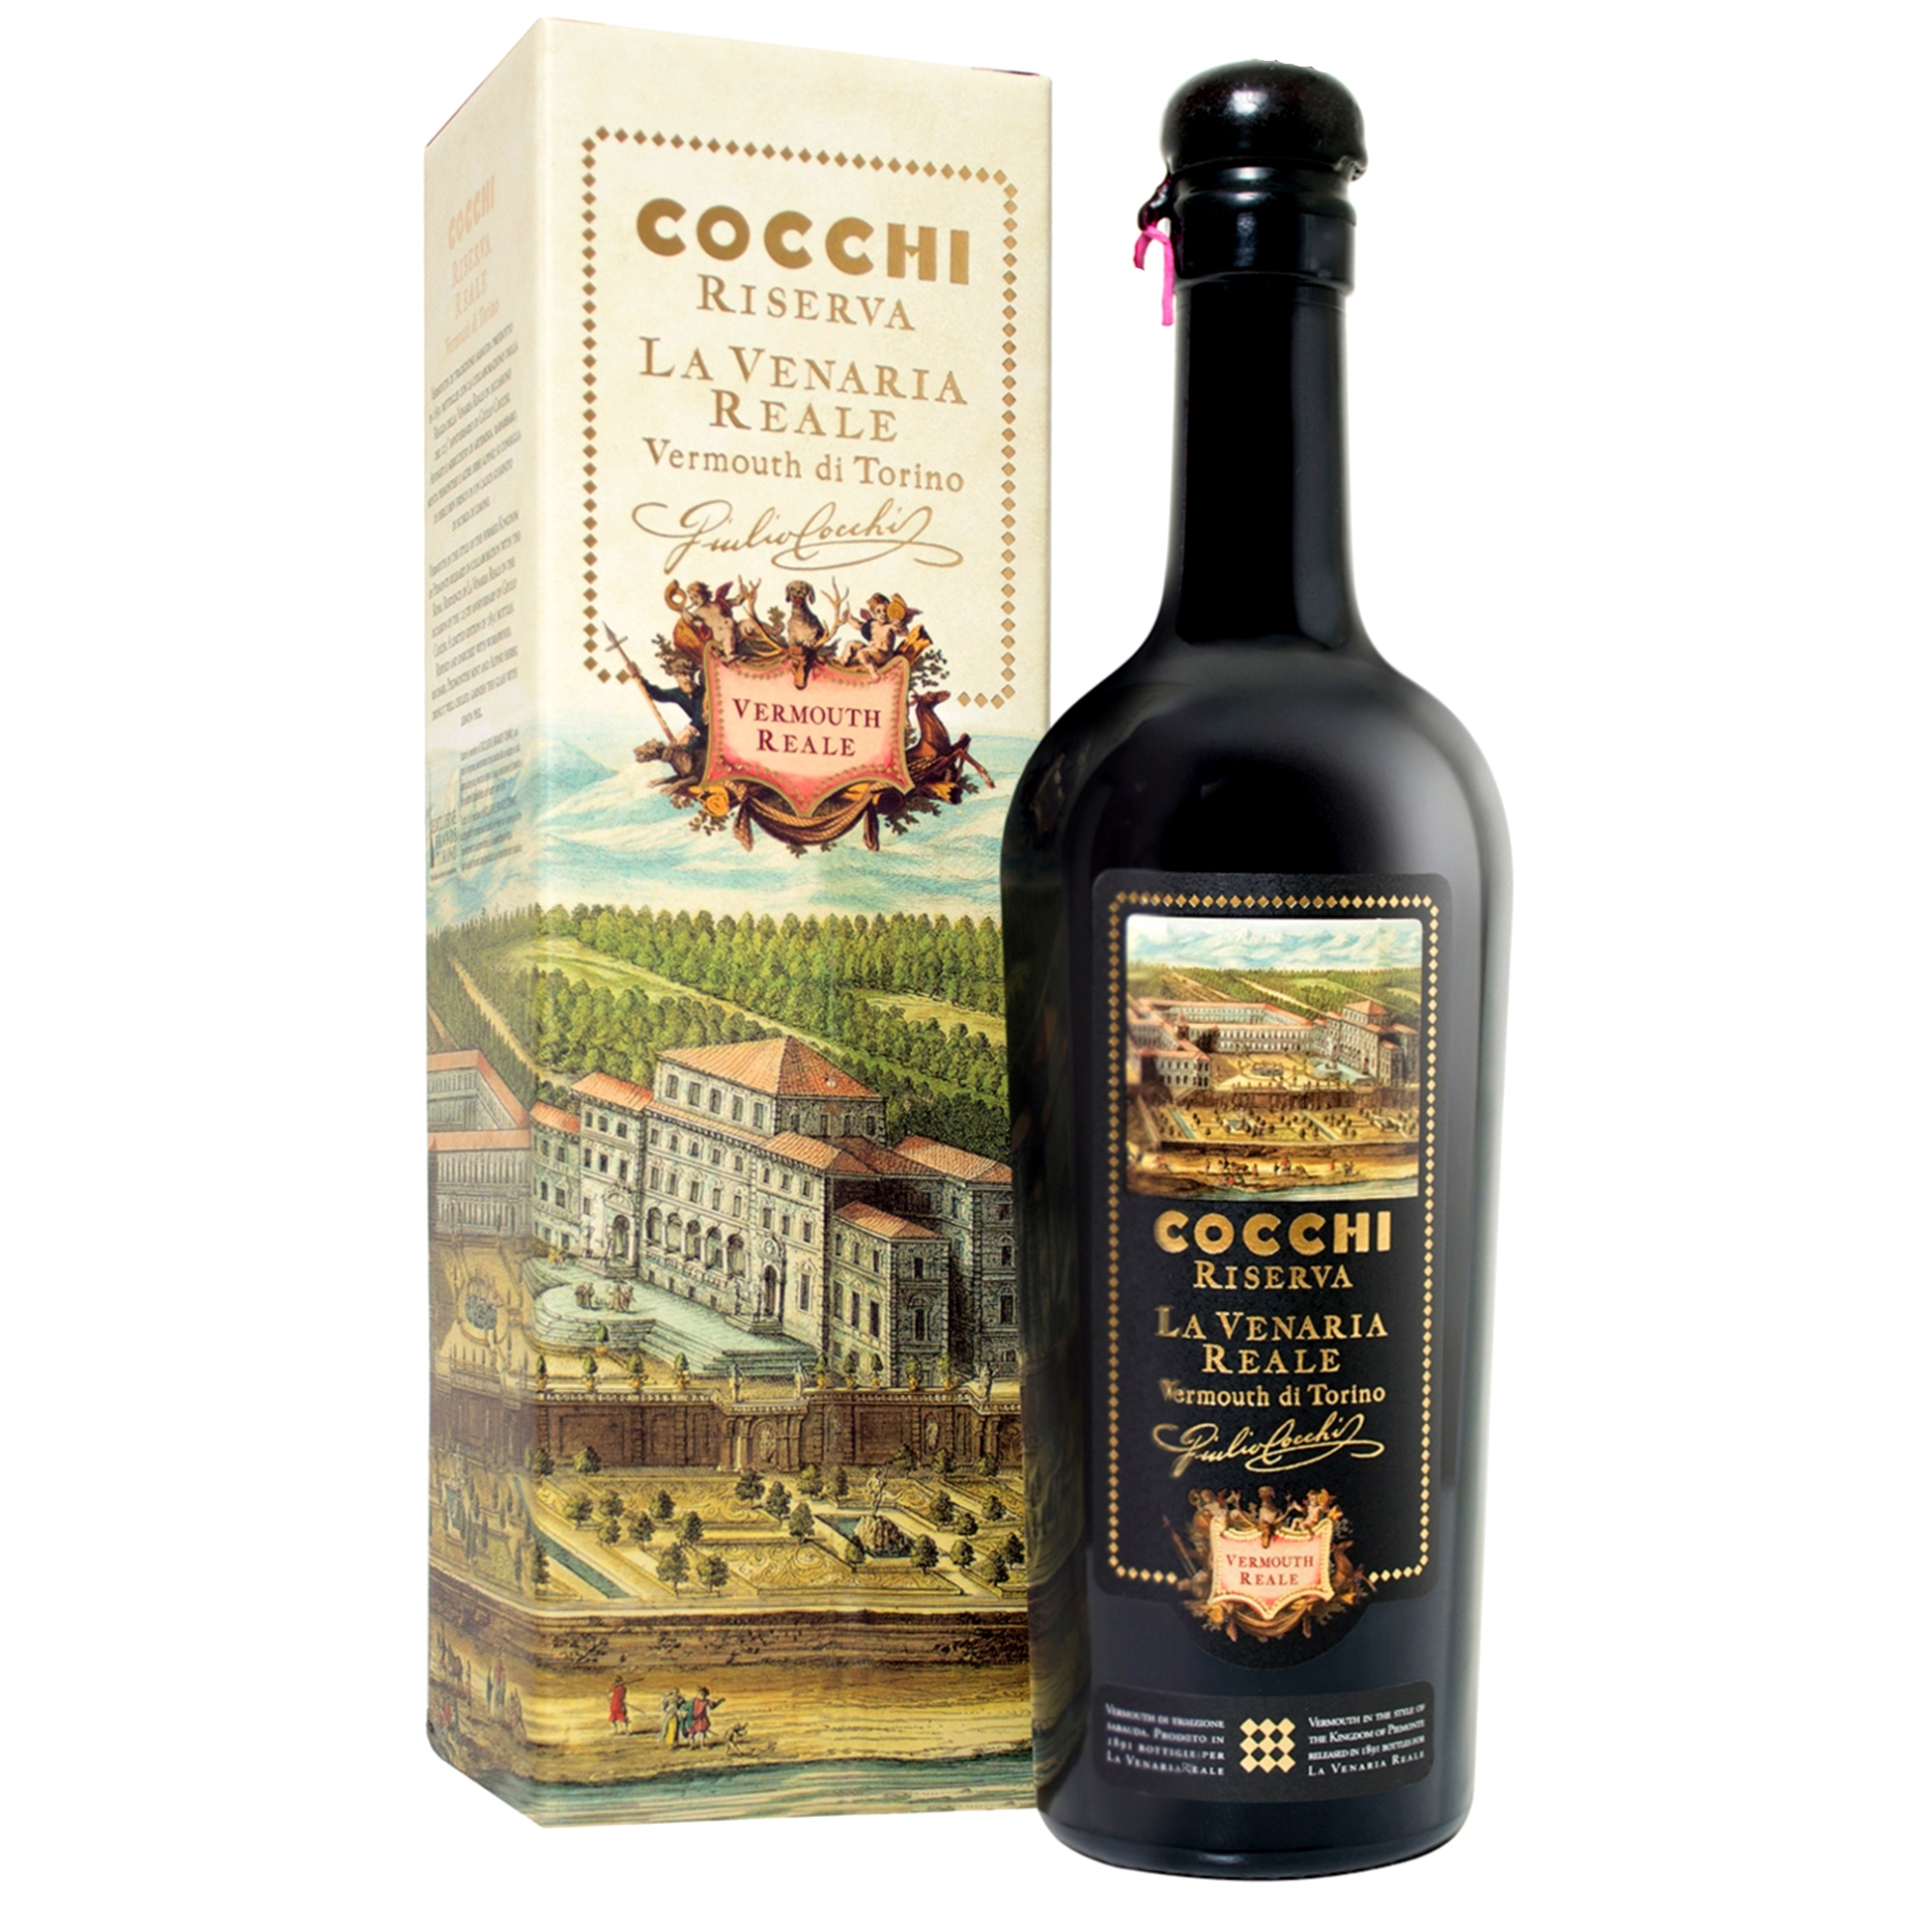 Cocchi Vermouth di Torino Riserva La Venaria Reale, 18% Vol. 0,5 ltr.